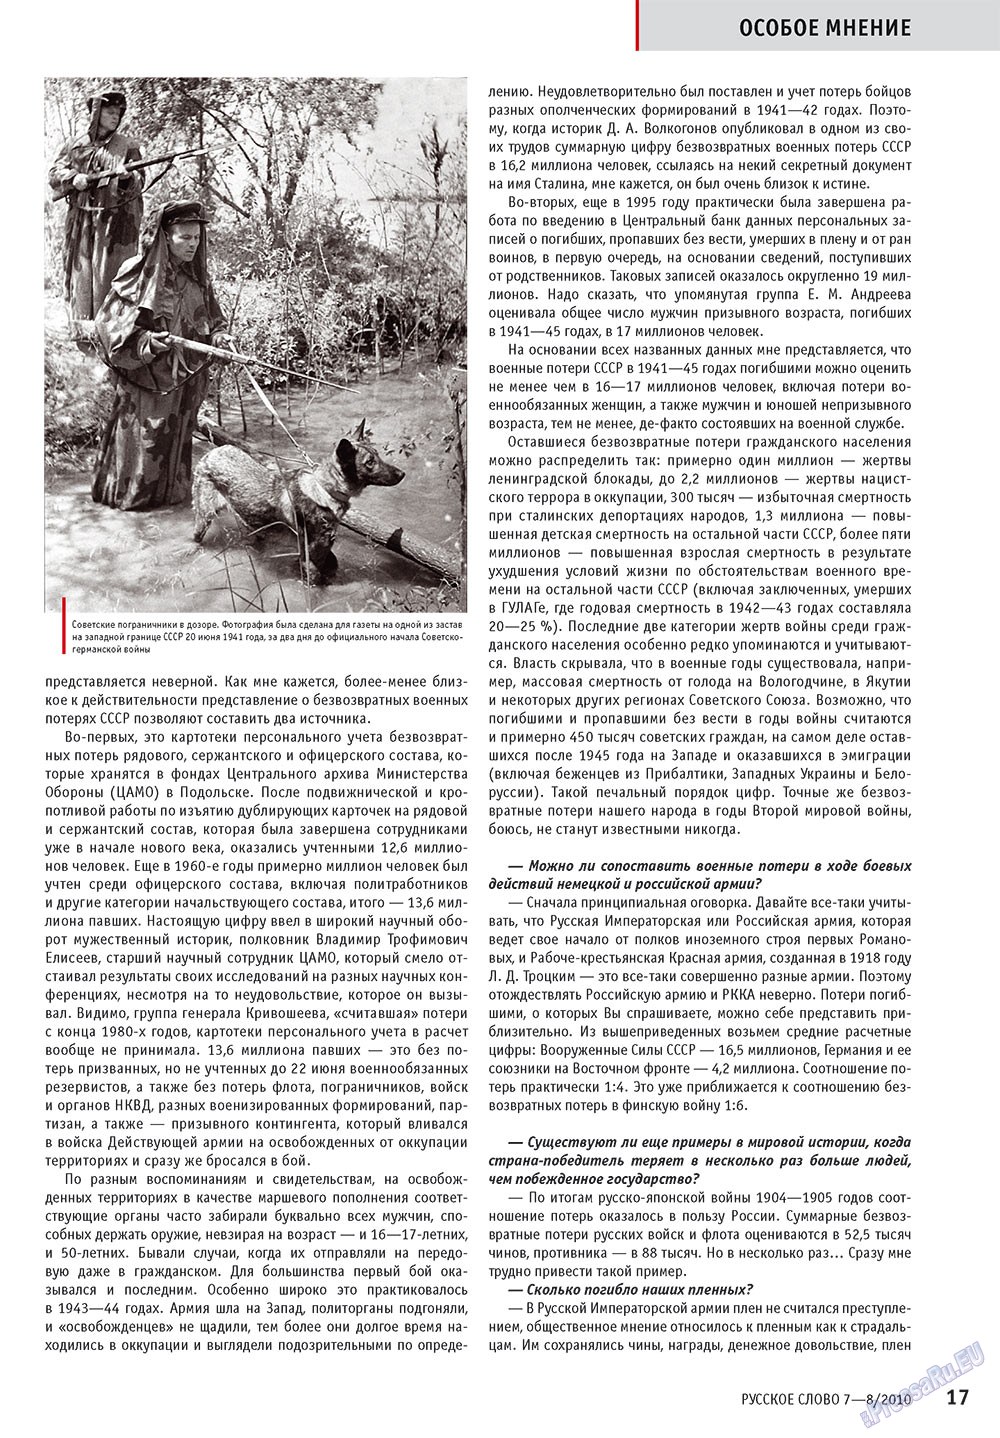 Русское слово, журнал. 2010 №7 стр.19